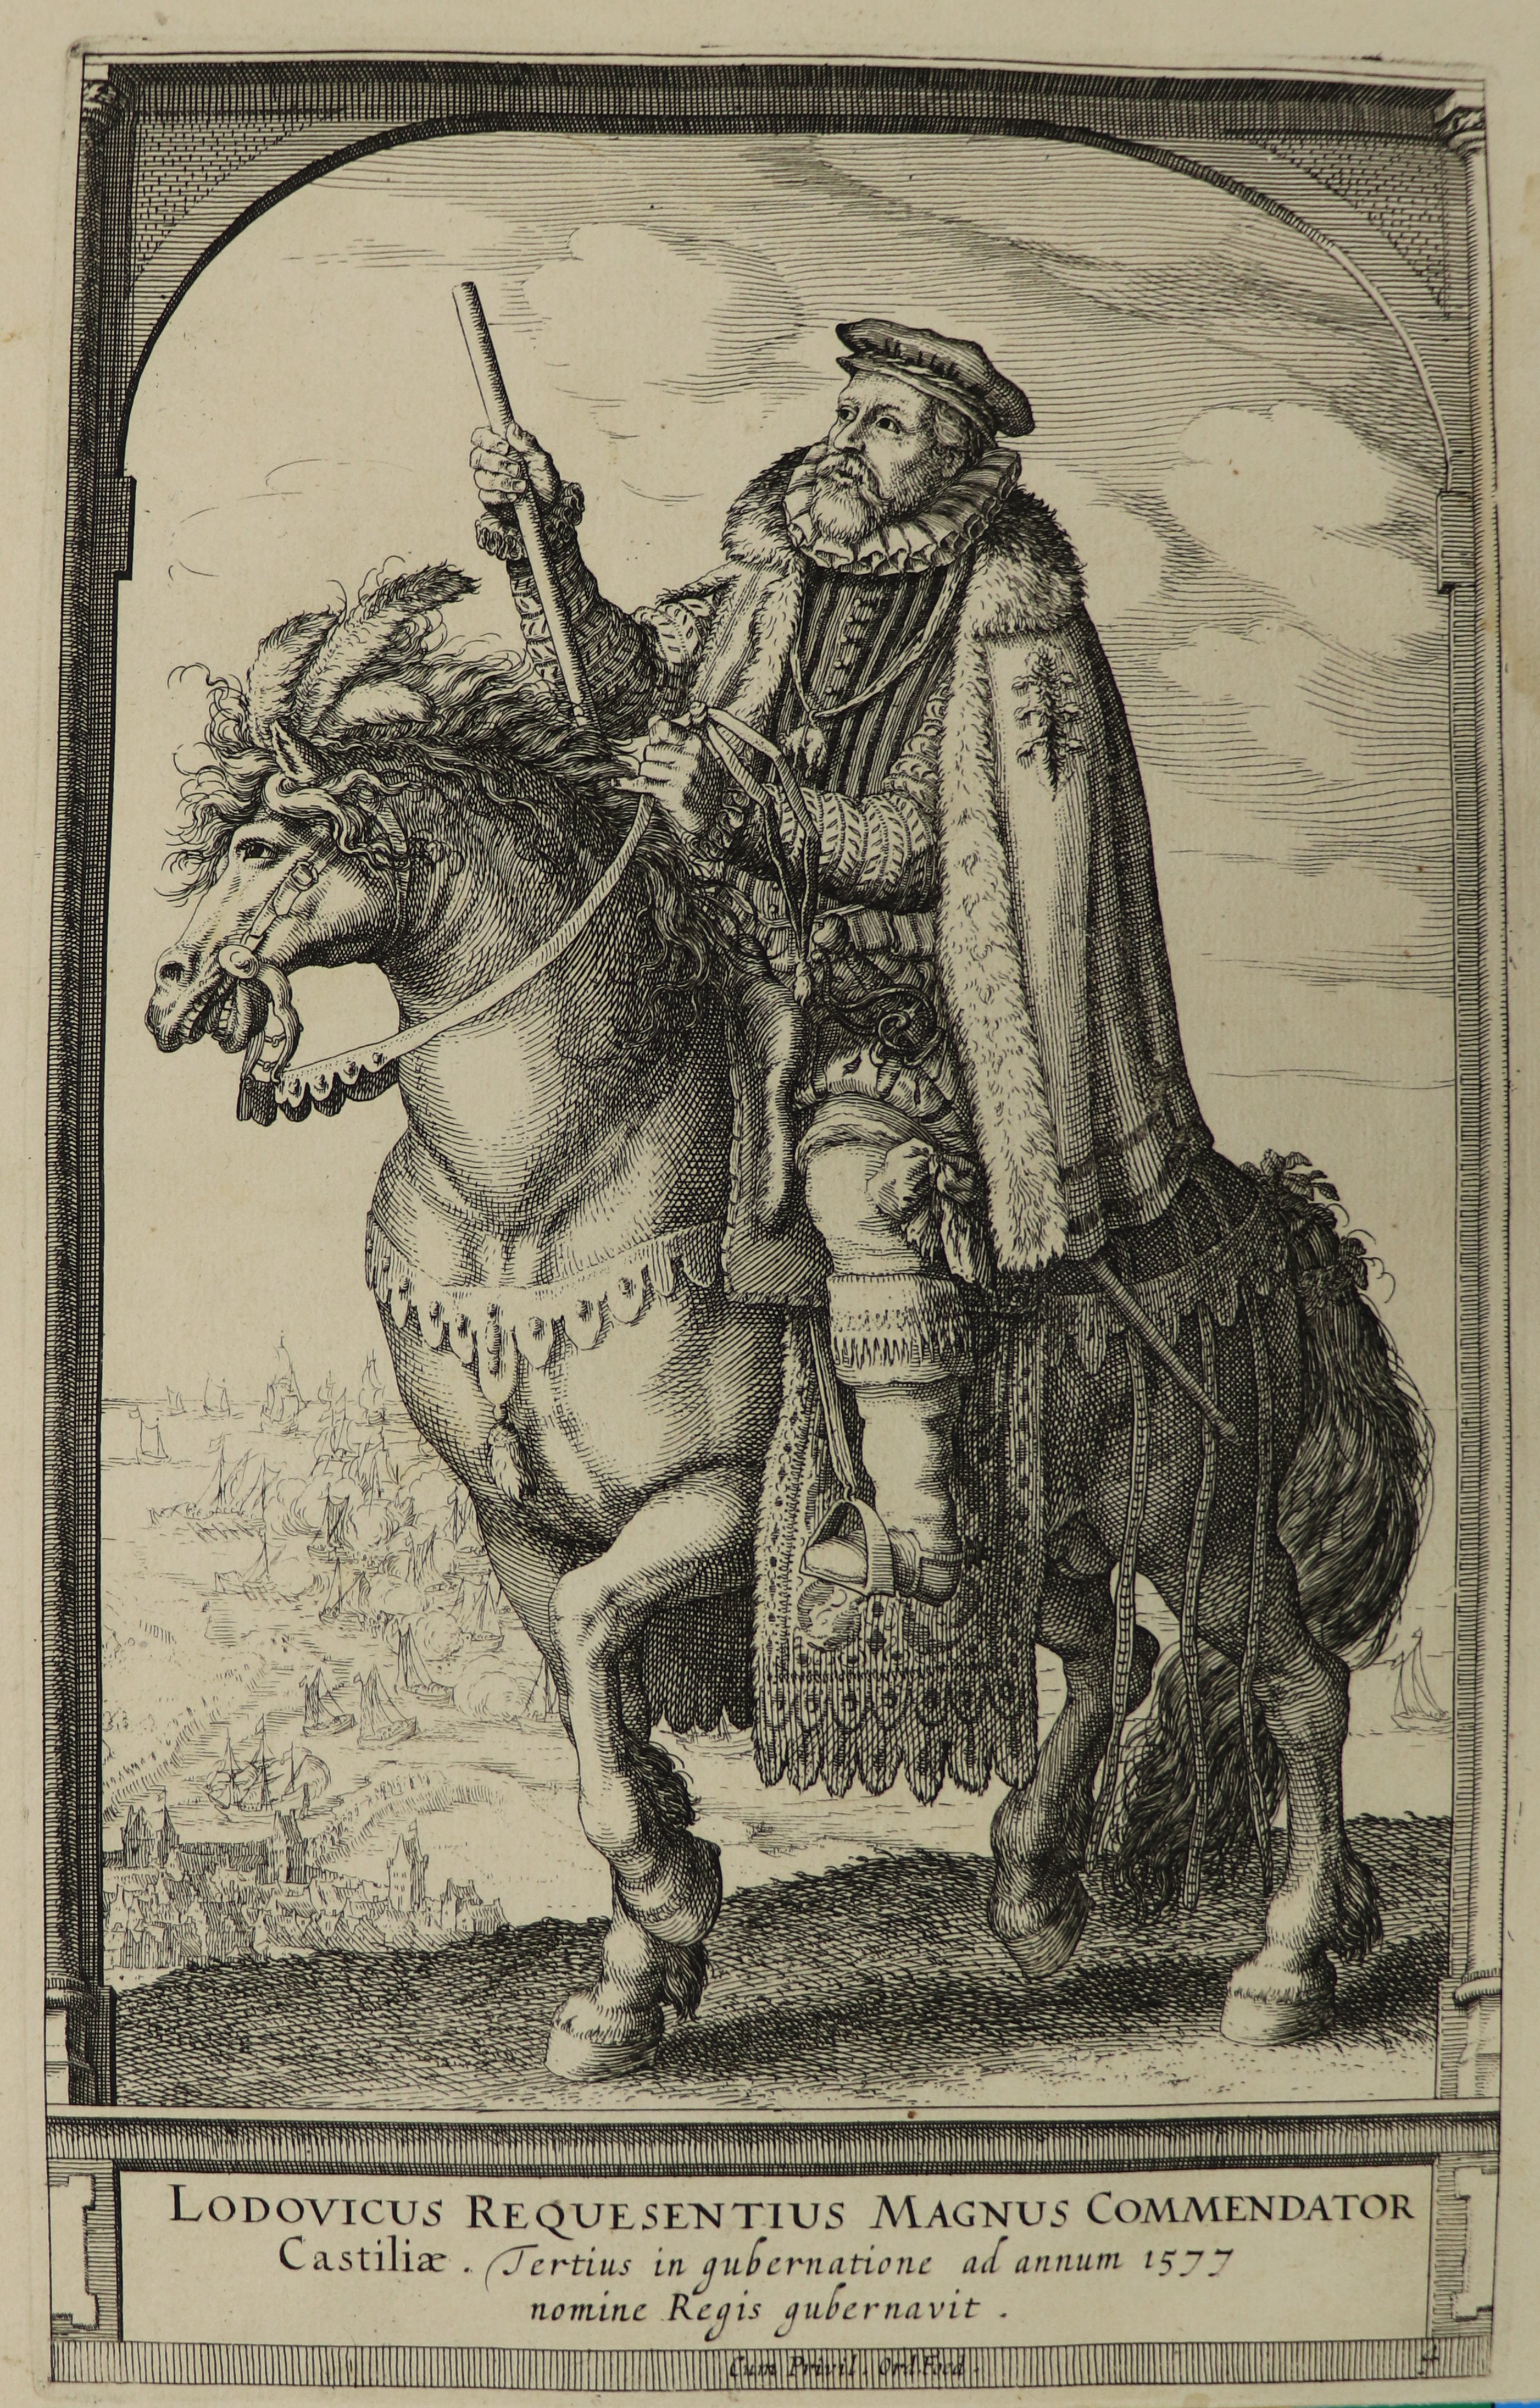 Don Luis de Zúñiga y Requesens, als Statthalter der Niederlande dargestellt, um 1620. (Städtisches Museum Schloss Rheydt CC BY)